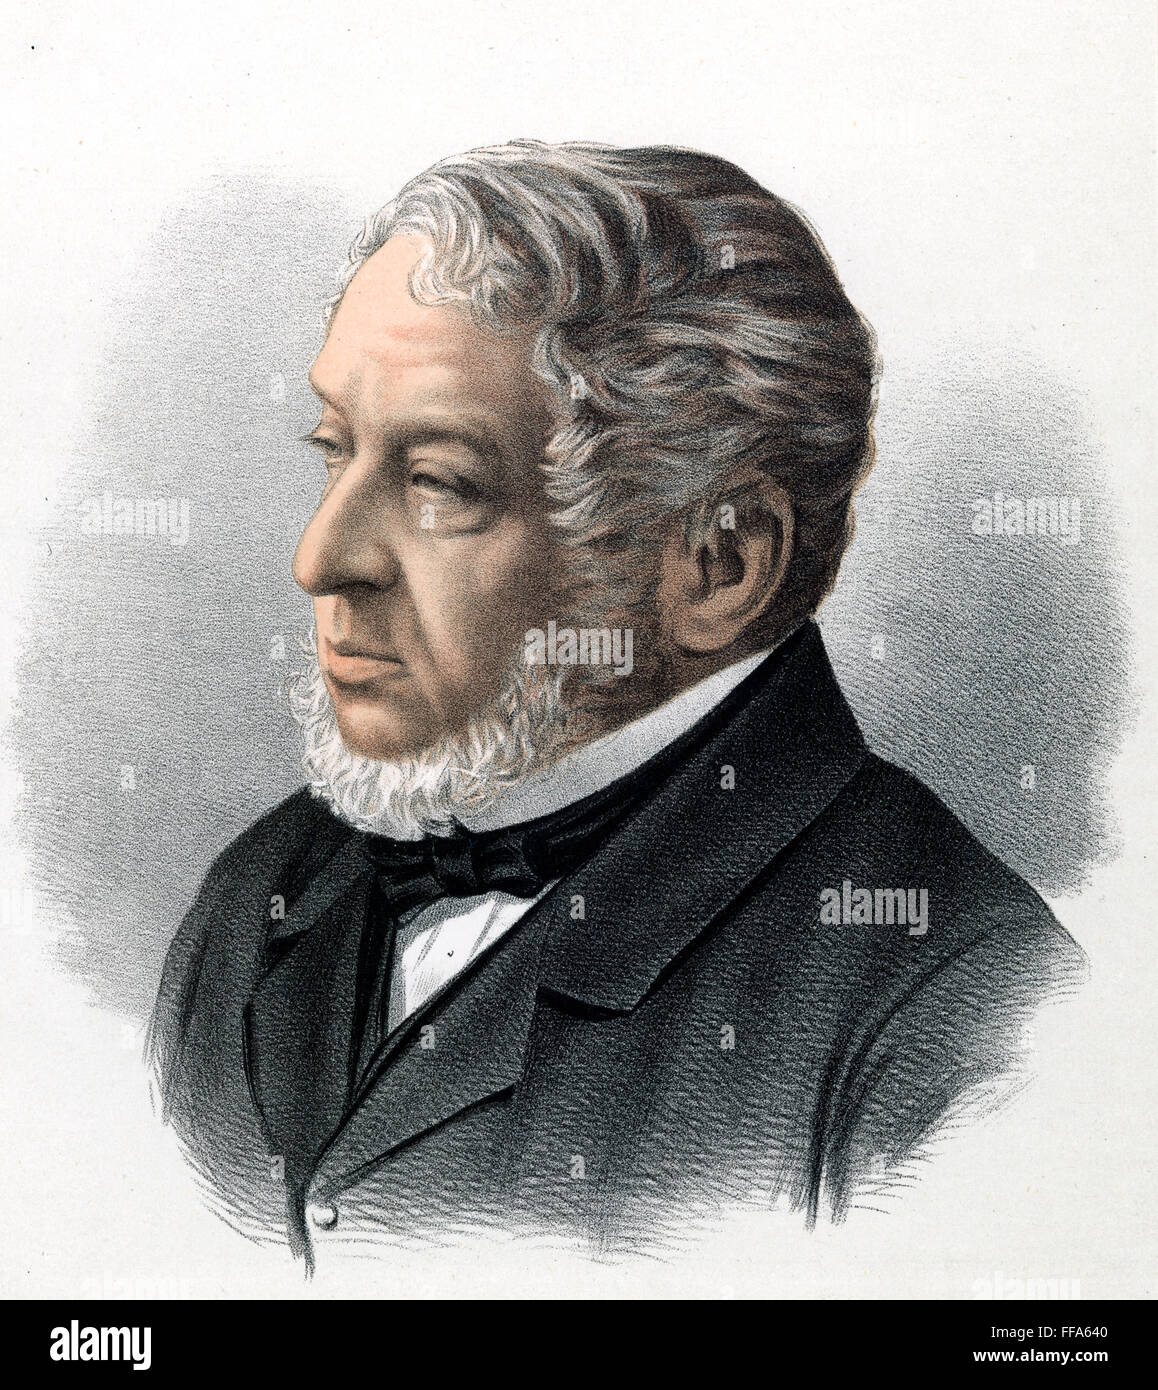 LIONEL NATHAN de ROTHSCHILD (1808-1879). Britischer Bankier und Philanthrop. Lithographie, Englisch, 19. Jahrhundert. Stockfoto